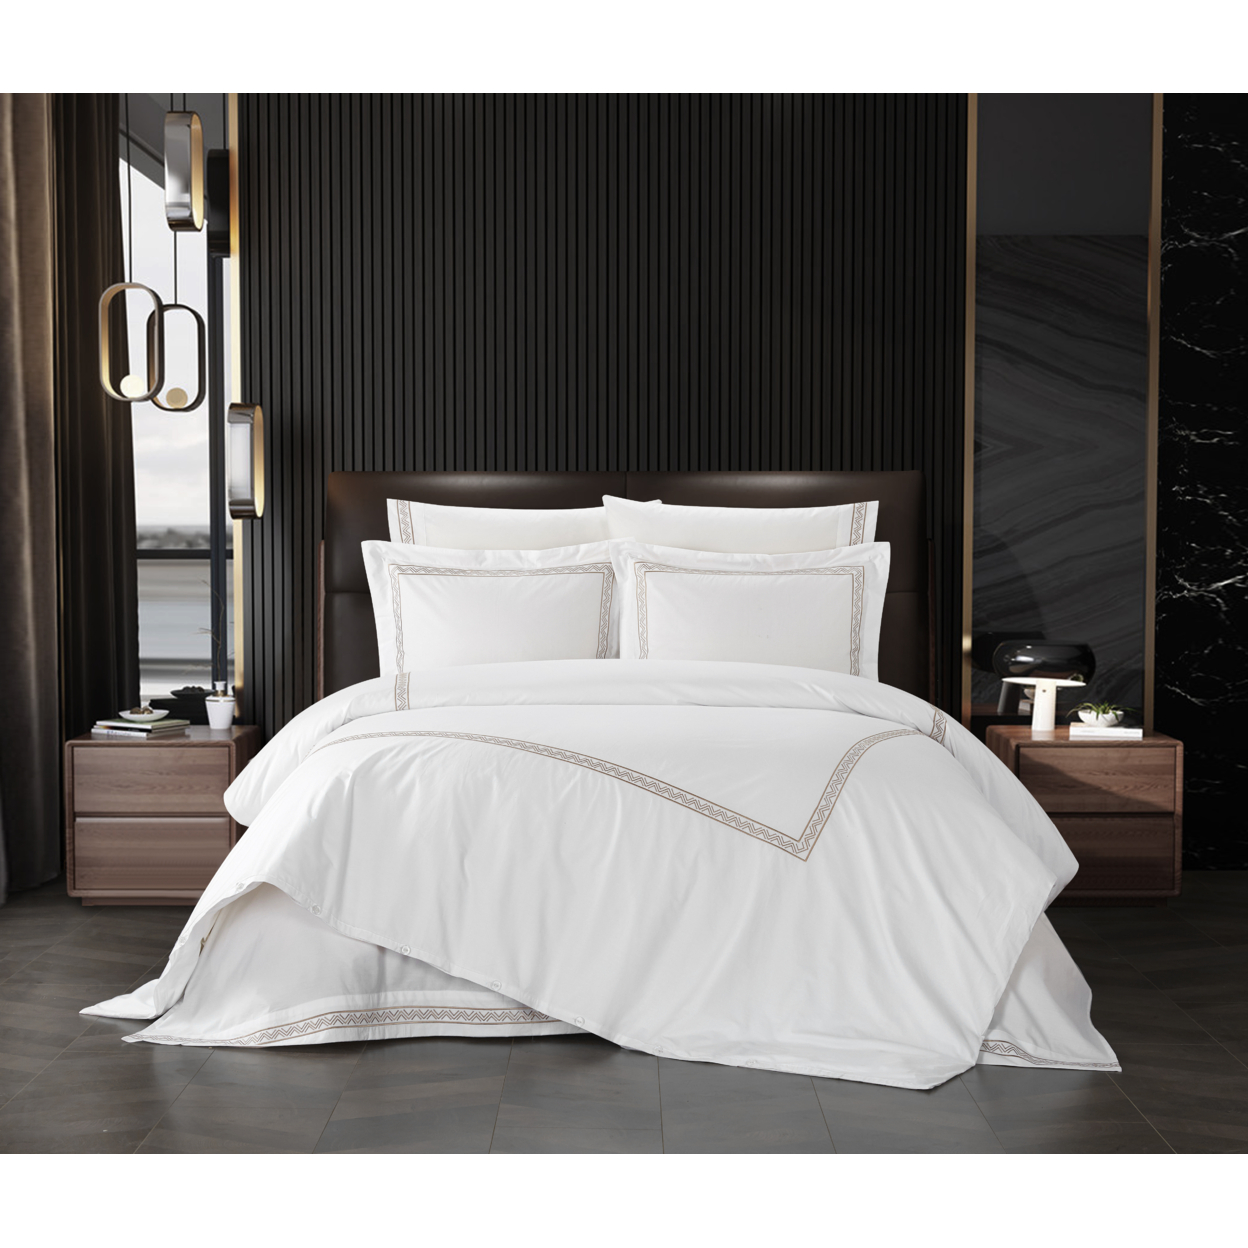 Ella 3 Piece Duvet Cotton Cover Set Hotel Collection Bedding - Grey, Queen